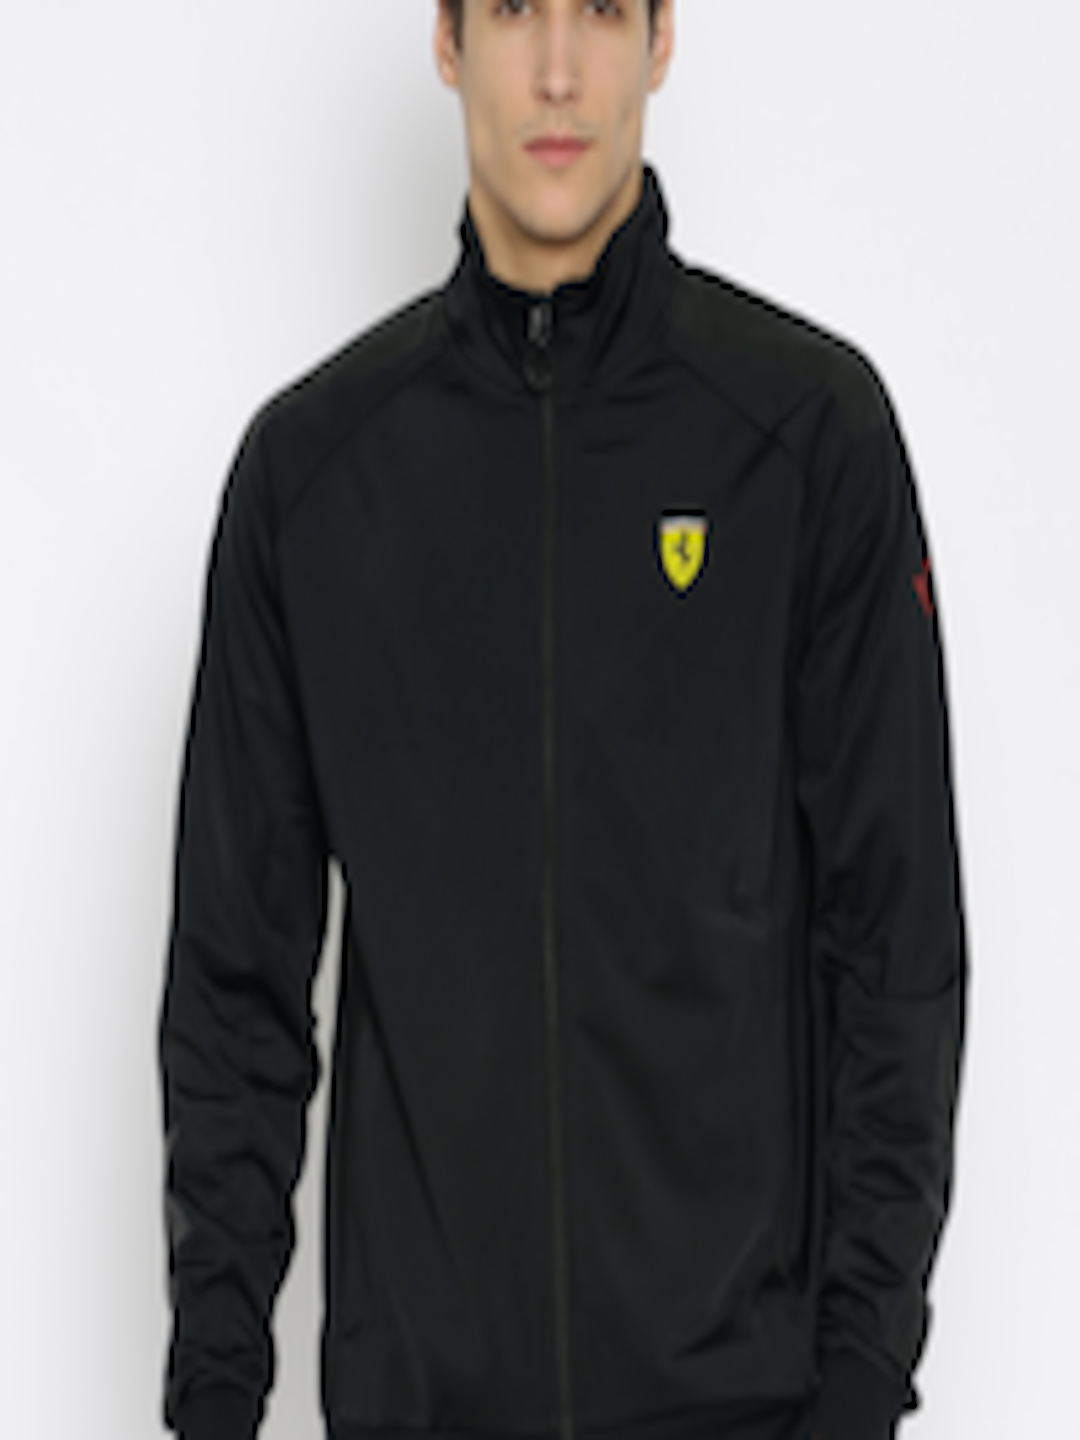 Buy PUMA Motorsport Black SF Track Jacket - Jackets for Men 1568380 ...